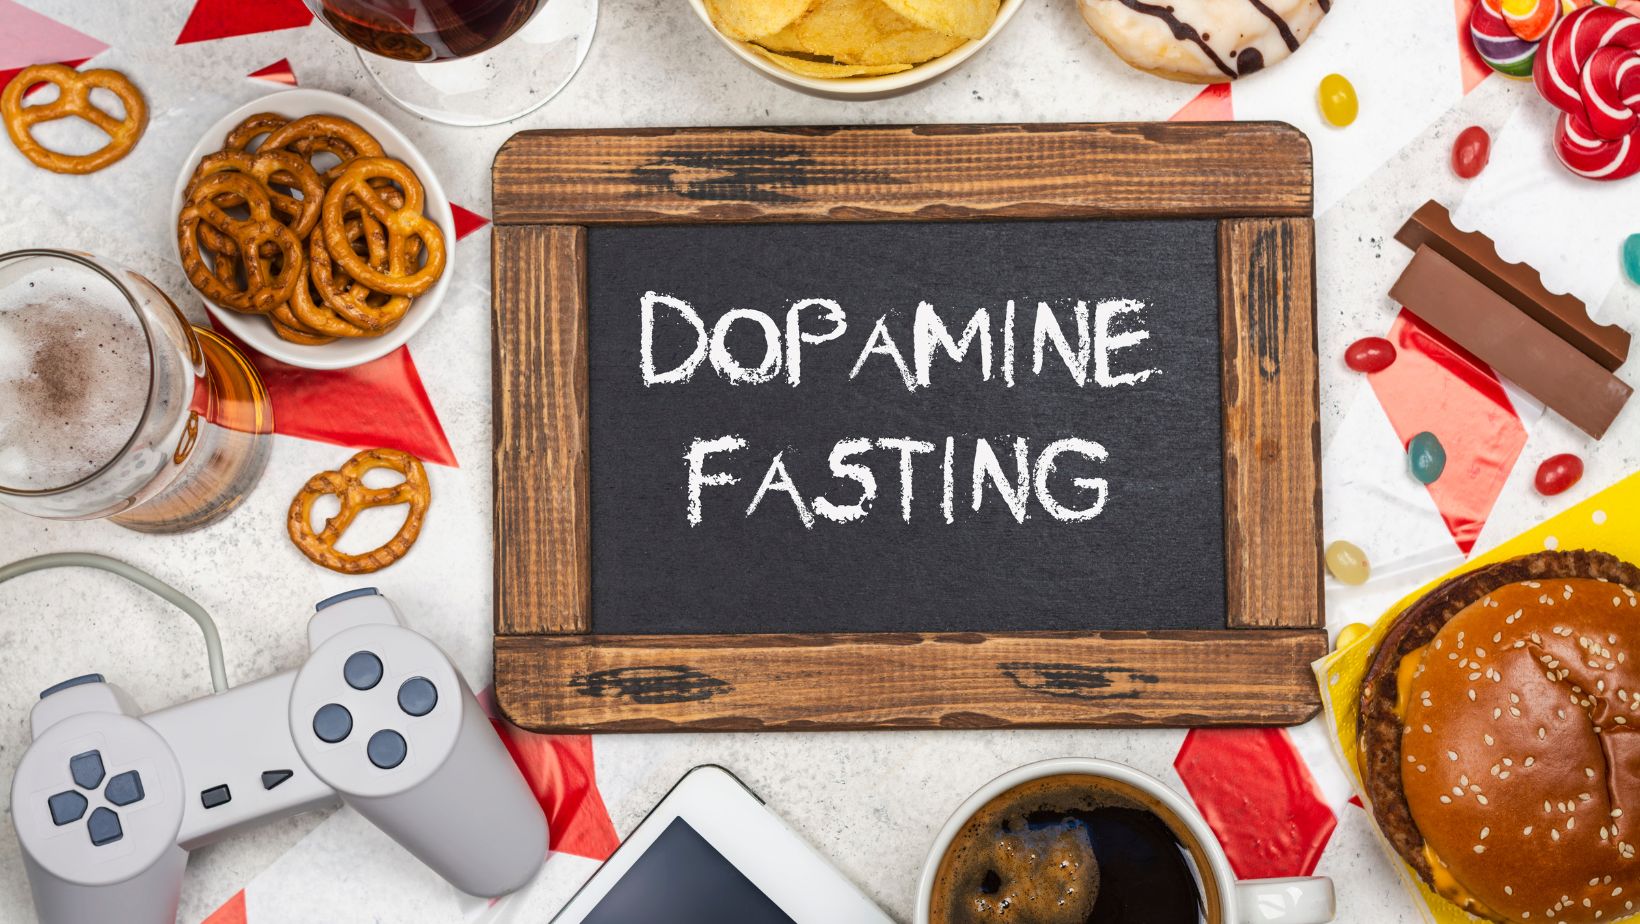 napis dopamine fasting na tablicy a wokół przykłady rzeczy prowadzących do uzależnienia od dopaminy - pad do konsoli, słodycze, słone przekąski, telefon, alkohol